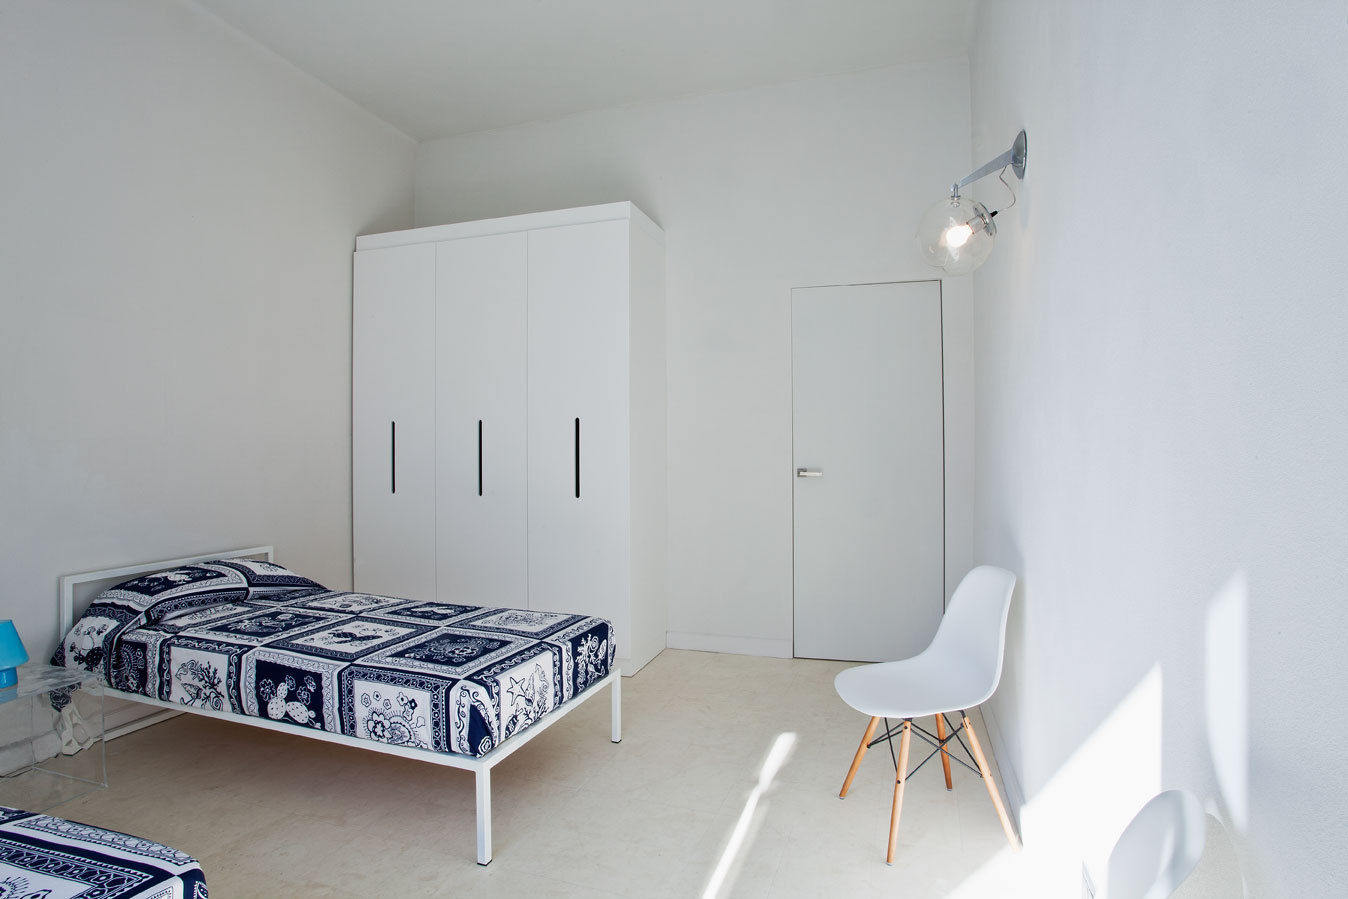 HOUSE FOR HOLIDAYS, PAOLO FRELLO & PARTNERS PAOLO FRELLO & PARTNERS Dormitorios de estilo minimalista